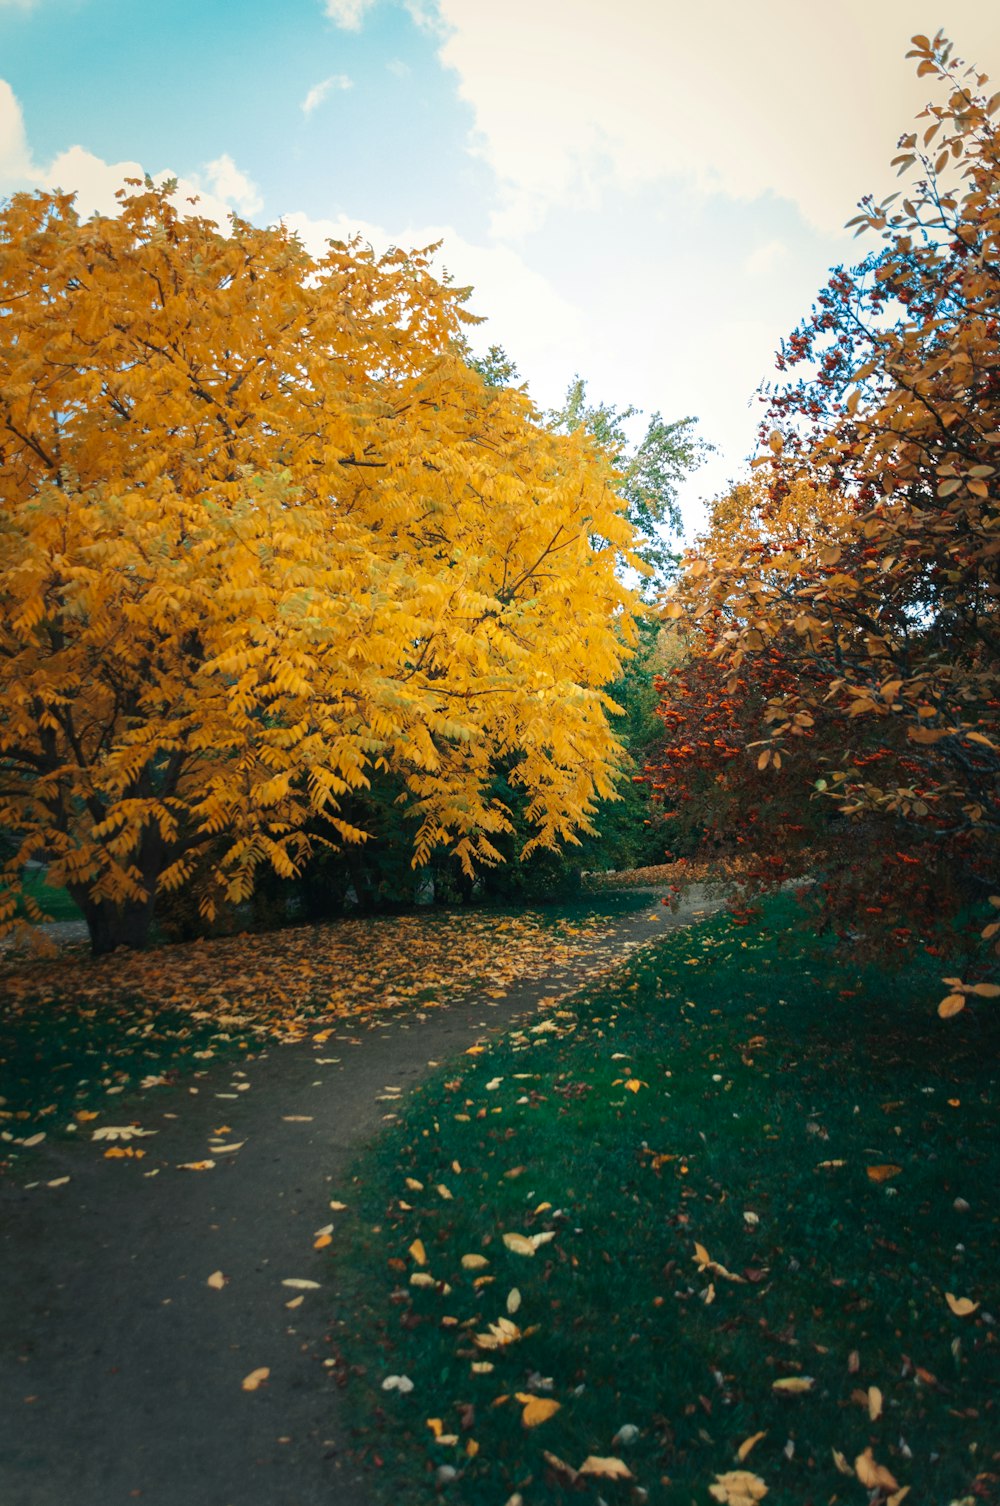 um caminho no meio de um parque com folhas amarelas no chão